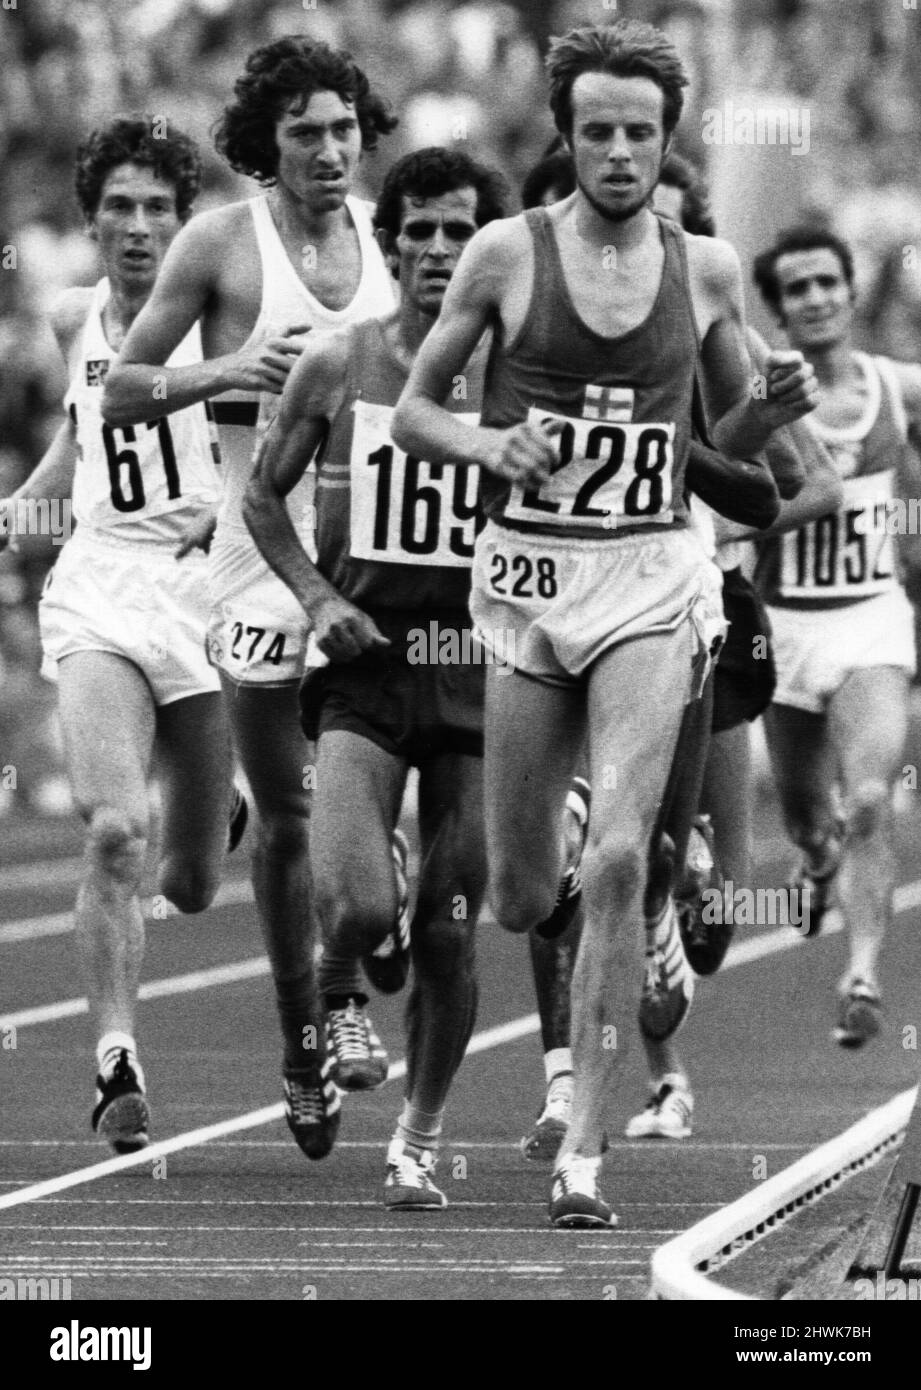 Jeux Olympiques 1972 10 000 mètres finalL Viren (Or) mène le champ de M Yifter (Bronze), David Bedford qui a fini 6th et Silver médaillé Puttemans de Belgique. Août 1972 72 8637 21A Banque D'Images